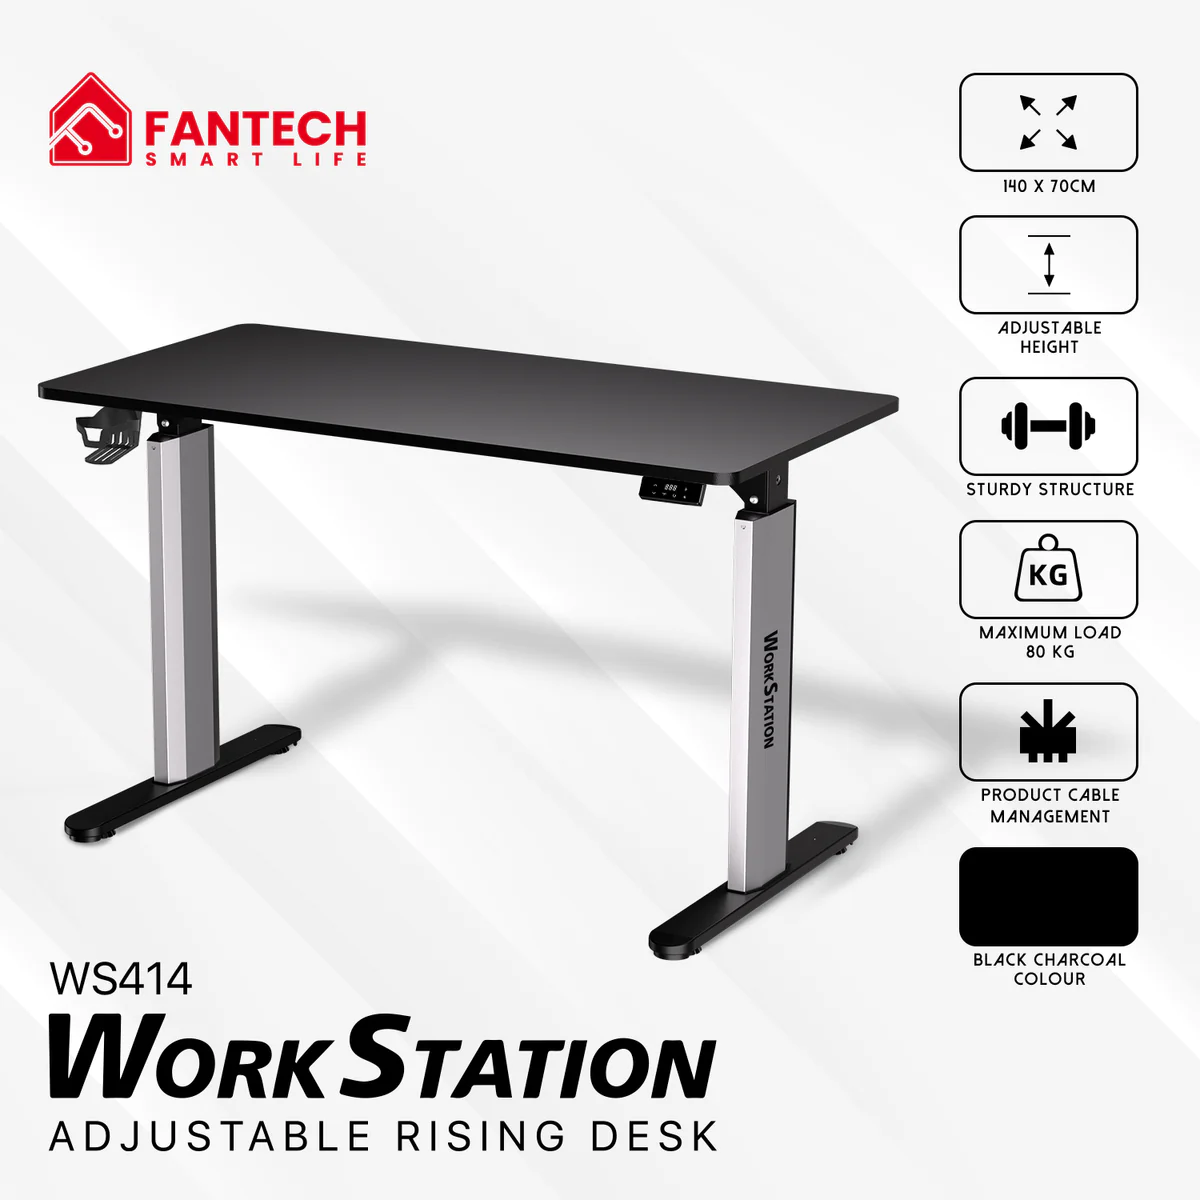 Fantech WS414 Work Station Asjustable Rising Desk